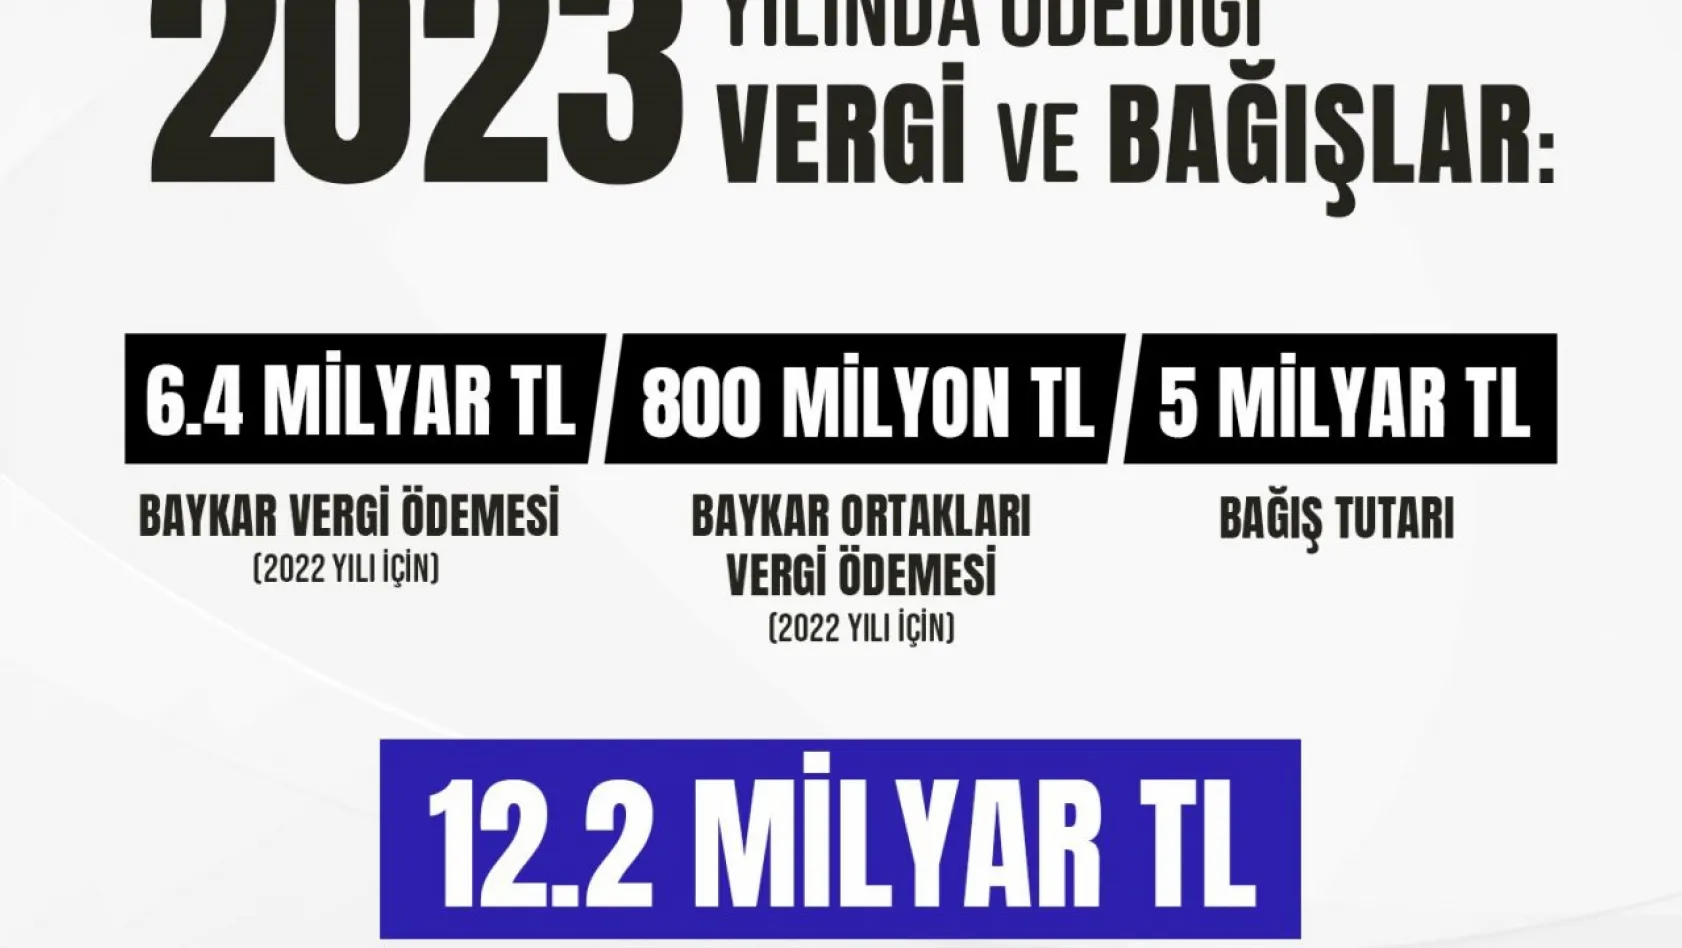 Baykar ödediği vergiler ve yaptığı bağışlarla Türkiye'ye 12.2 milyar TL'lik doğrudan katkı sağladı